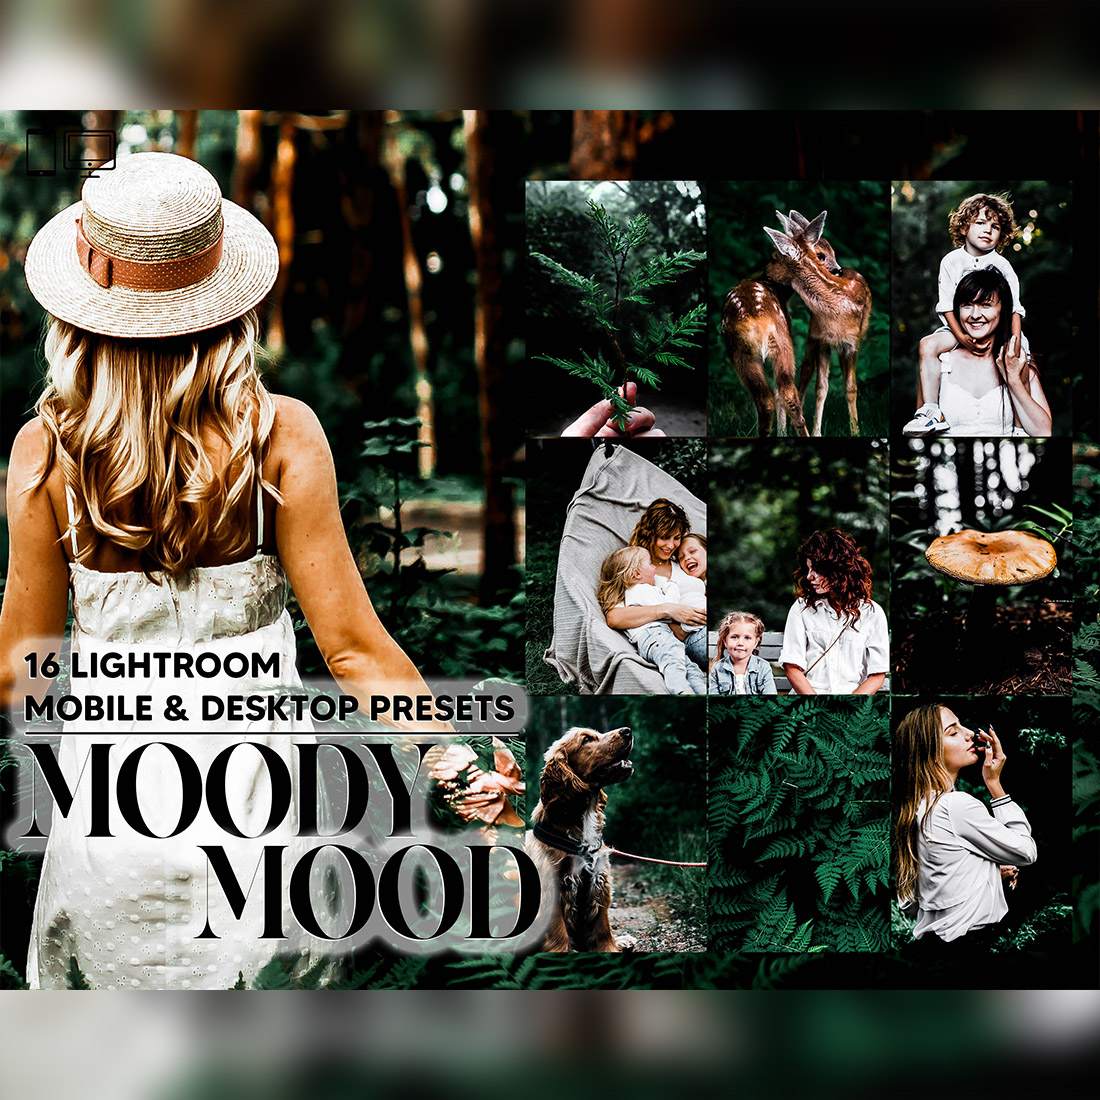 16 Moody Mood Lightroom Presets, Tropical Mobile Preset, Forest Dark Desktop LR Lifestyle DNG Instagram Filter Theme Portrait cover image.